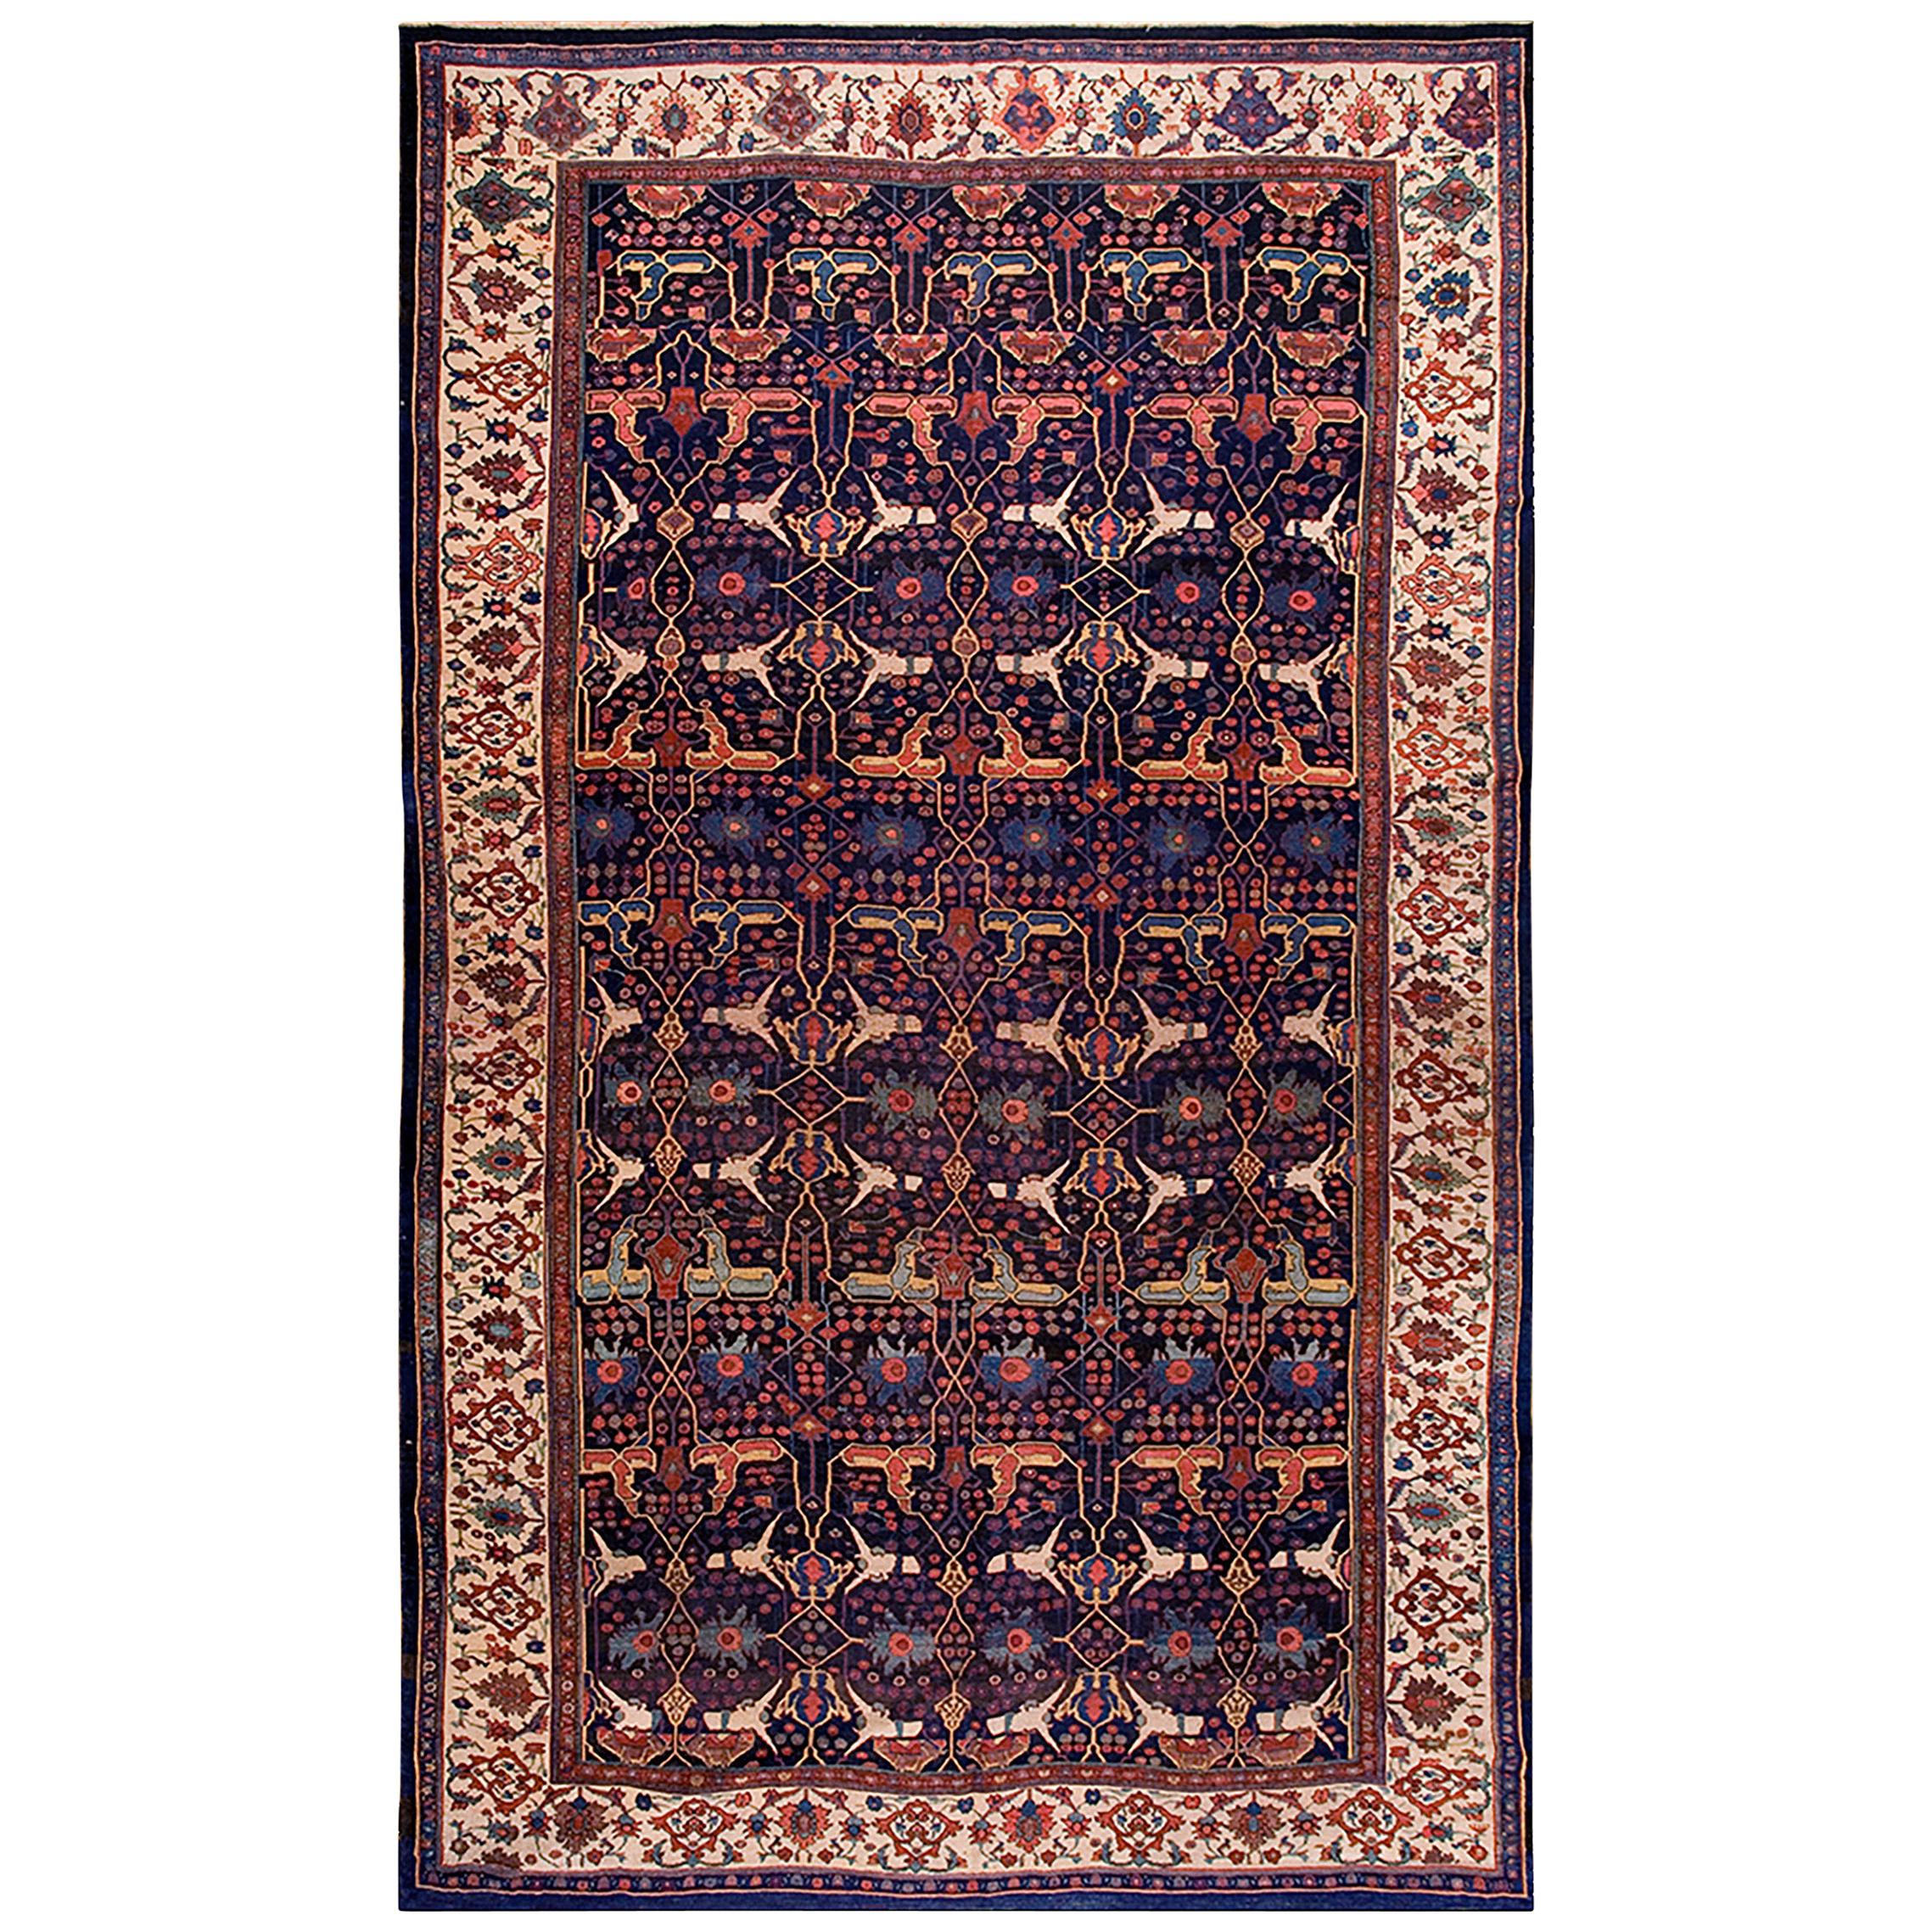 19th Century W. Persian Bijar Garrus Carpet ( 11'3" x 18'10" - 343 x 575 )